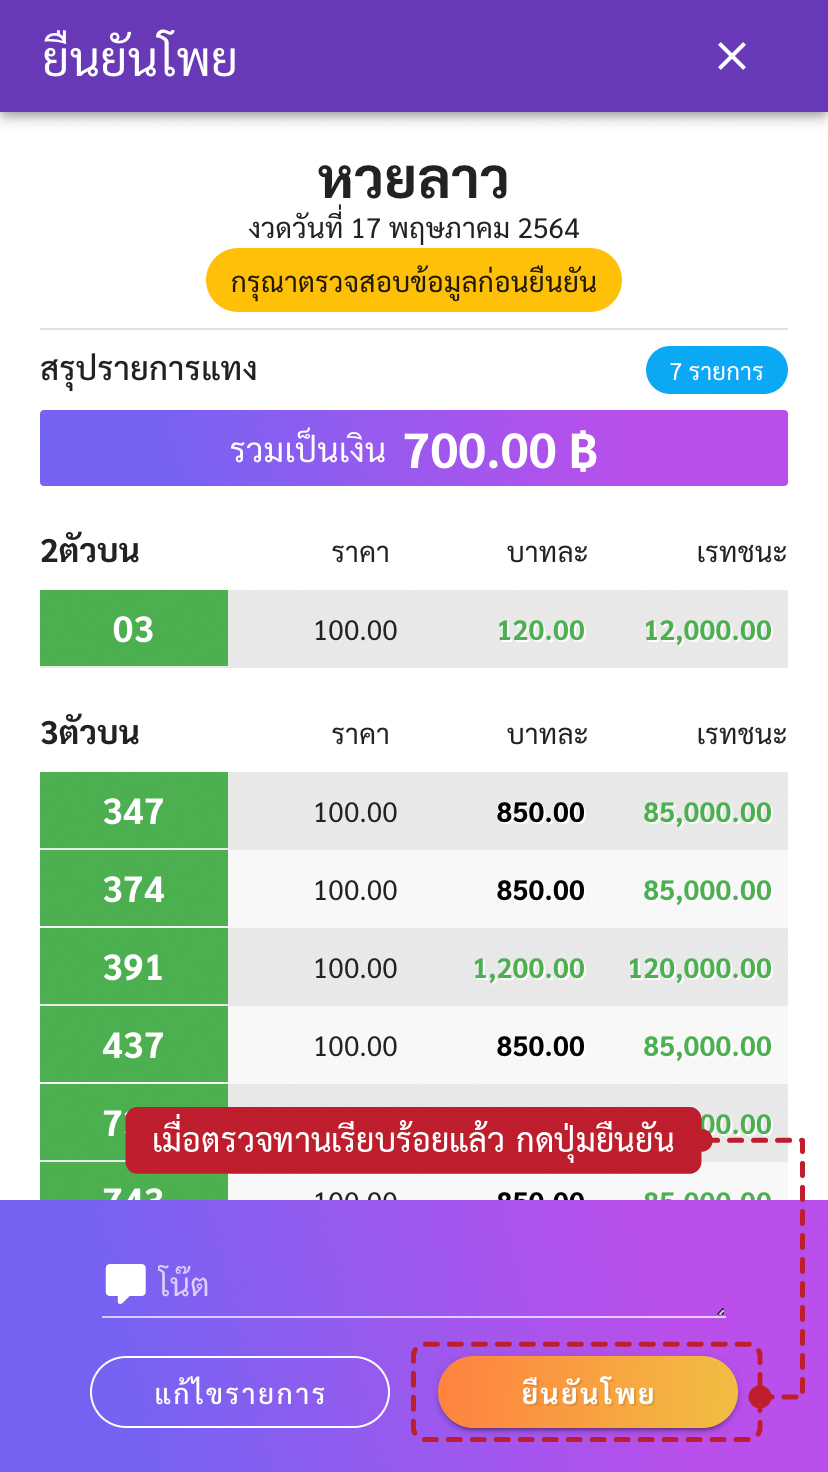 ขั้นตอนวิธีแทงหวยเว็บโต๊ดเว็บแทงหวยอันดับ1ของไทยสูงสุดบาทละ1200